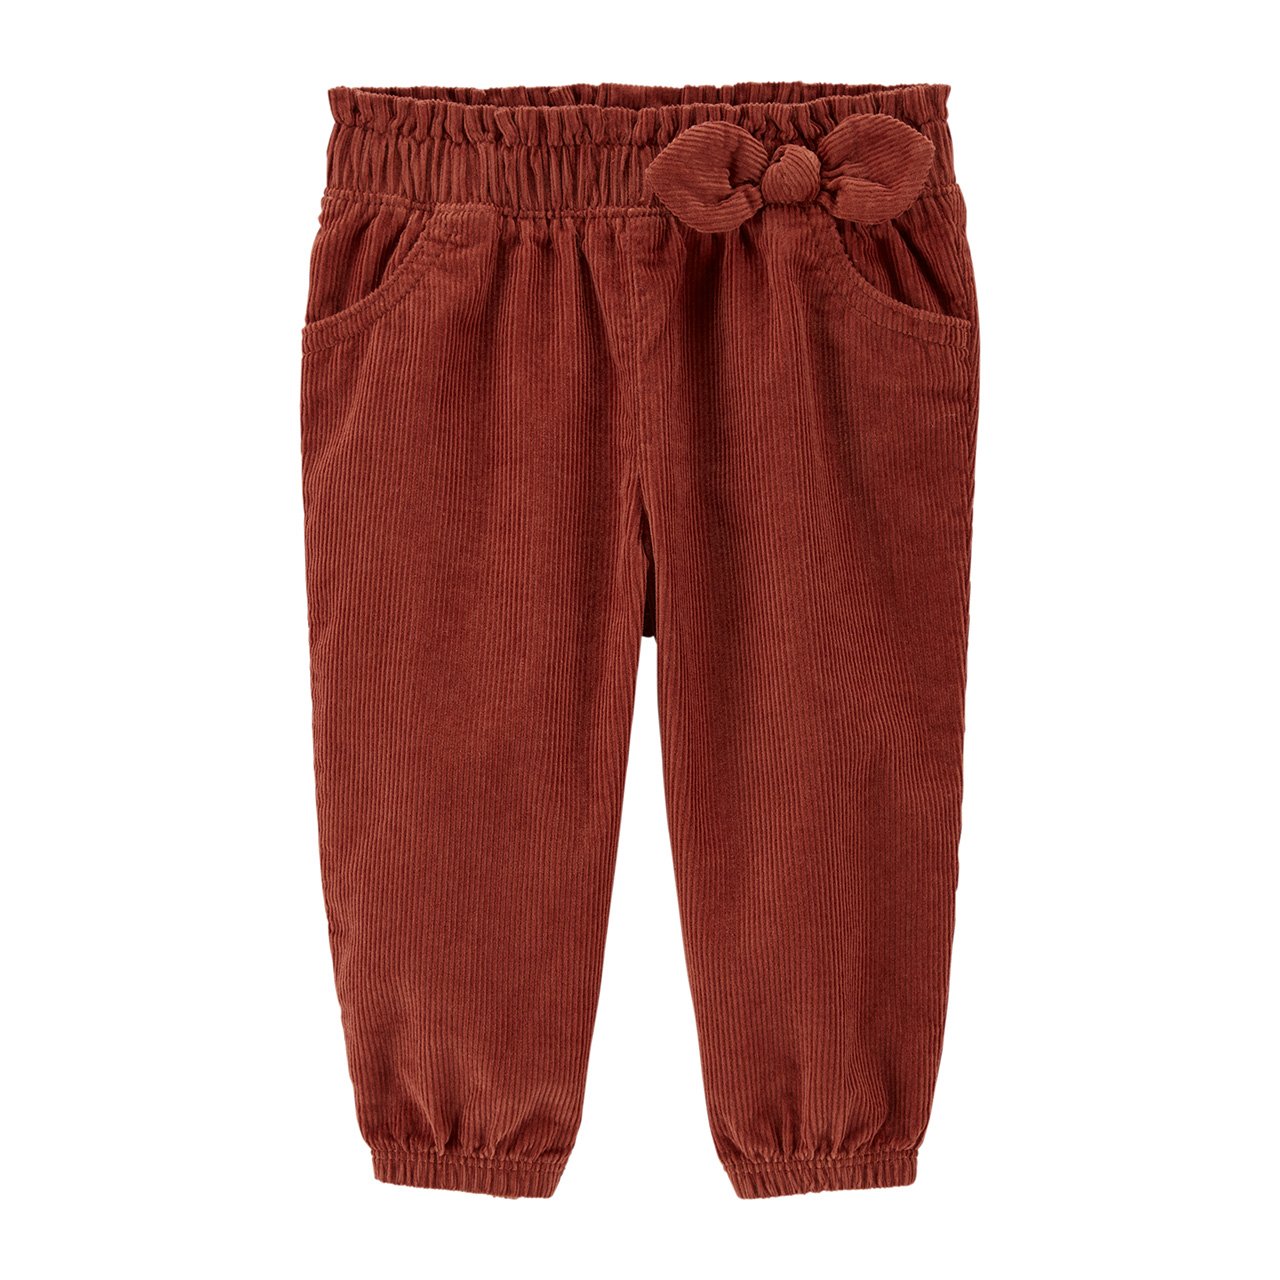 Pantalón de pana rojo marrón para bebé.